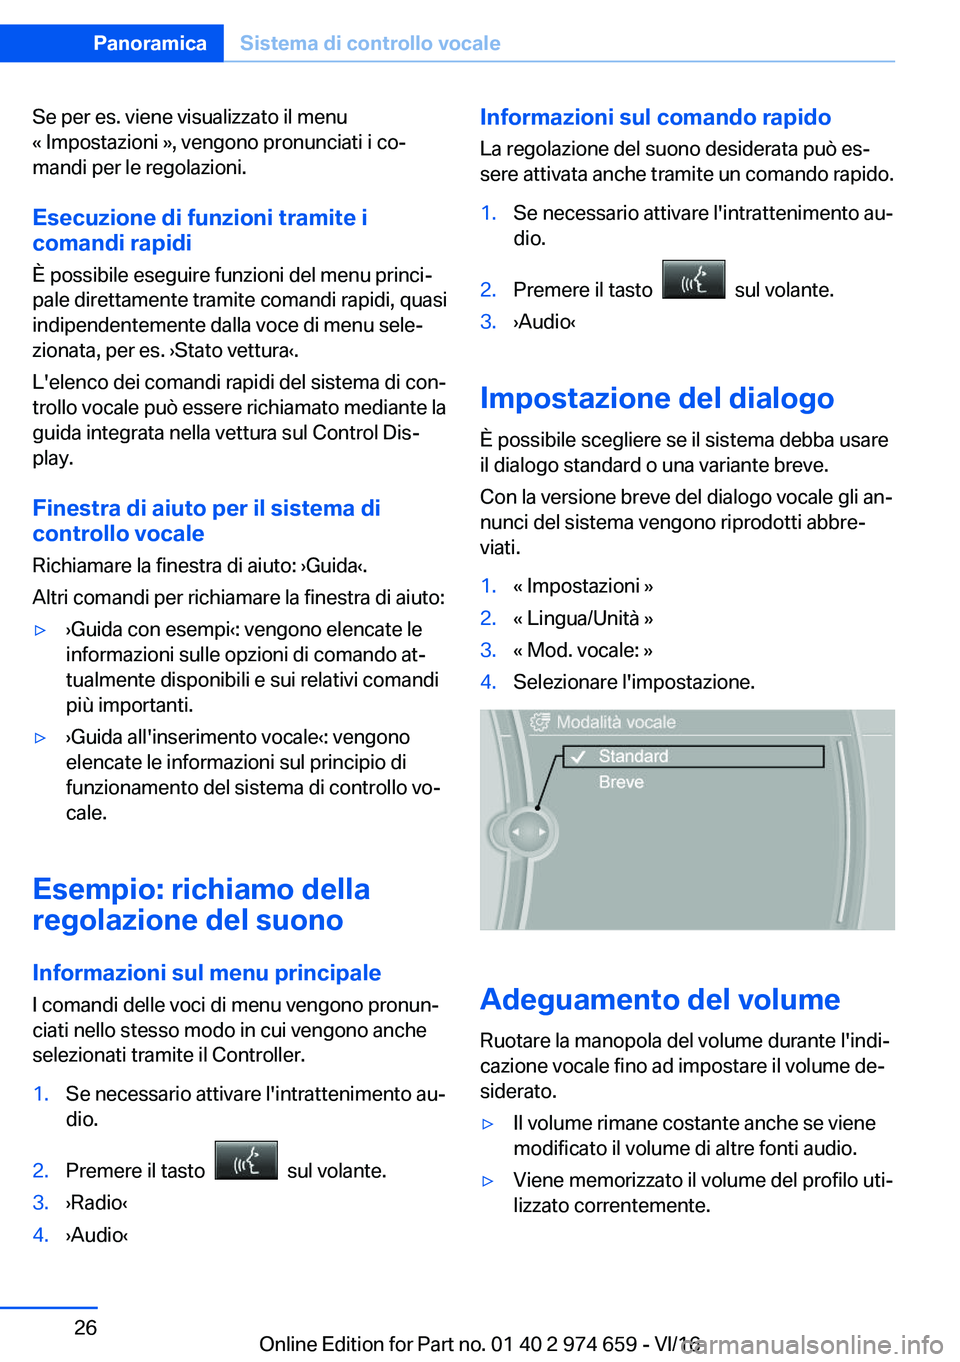 BMW M2 2017  Libretti Di Uso E manutenzione (in Italian) �S�e� �p�e�r� �e�s�.� �v�i�e�n�e� �v�i�s�u�a�l�i�z�z�a�t�o� �i�l� �m�e�n�u
�«� �I�m�p�o�s�t�a�z�i�o�n�i� �{�,� �v�e�n�g�o�n�o� �p�r�o�n�u�n�c�i�a�t�i� �i� �c�oª
�m�a�n�d�i� �p�e�r� �l�e� �r�e�g�o�l